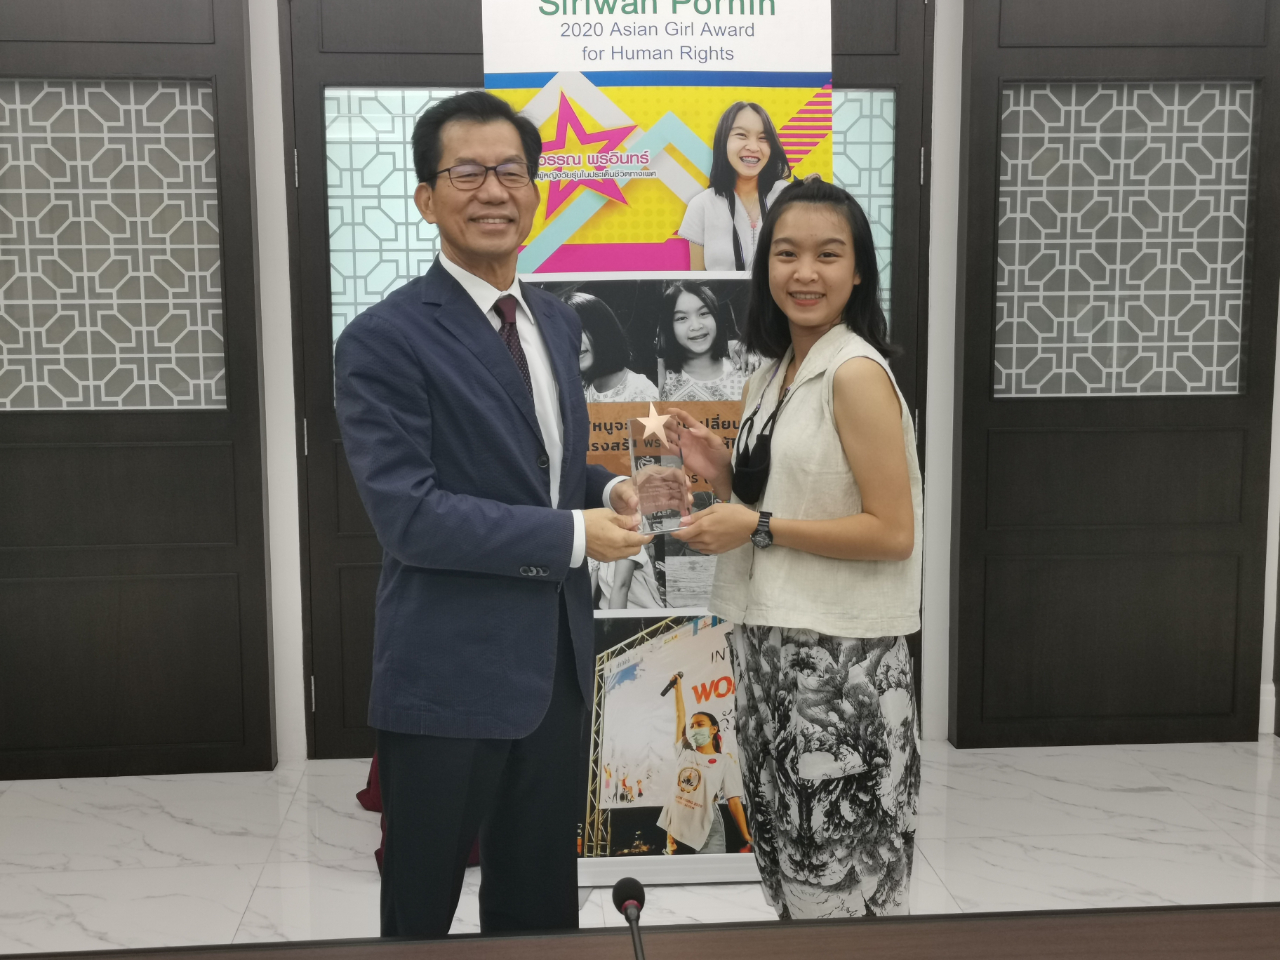 駐泰國代表處李應元大使頒贈亞洲人權獎泰國獲獎人Siriwan Pornin